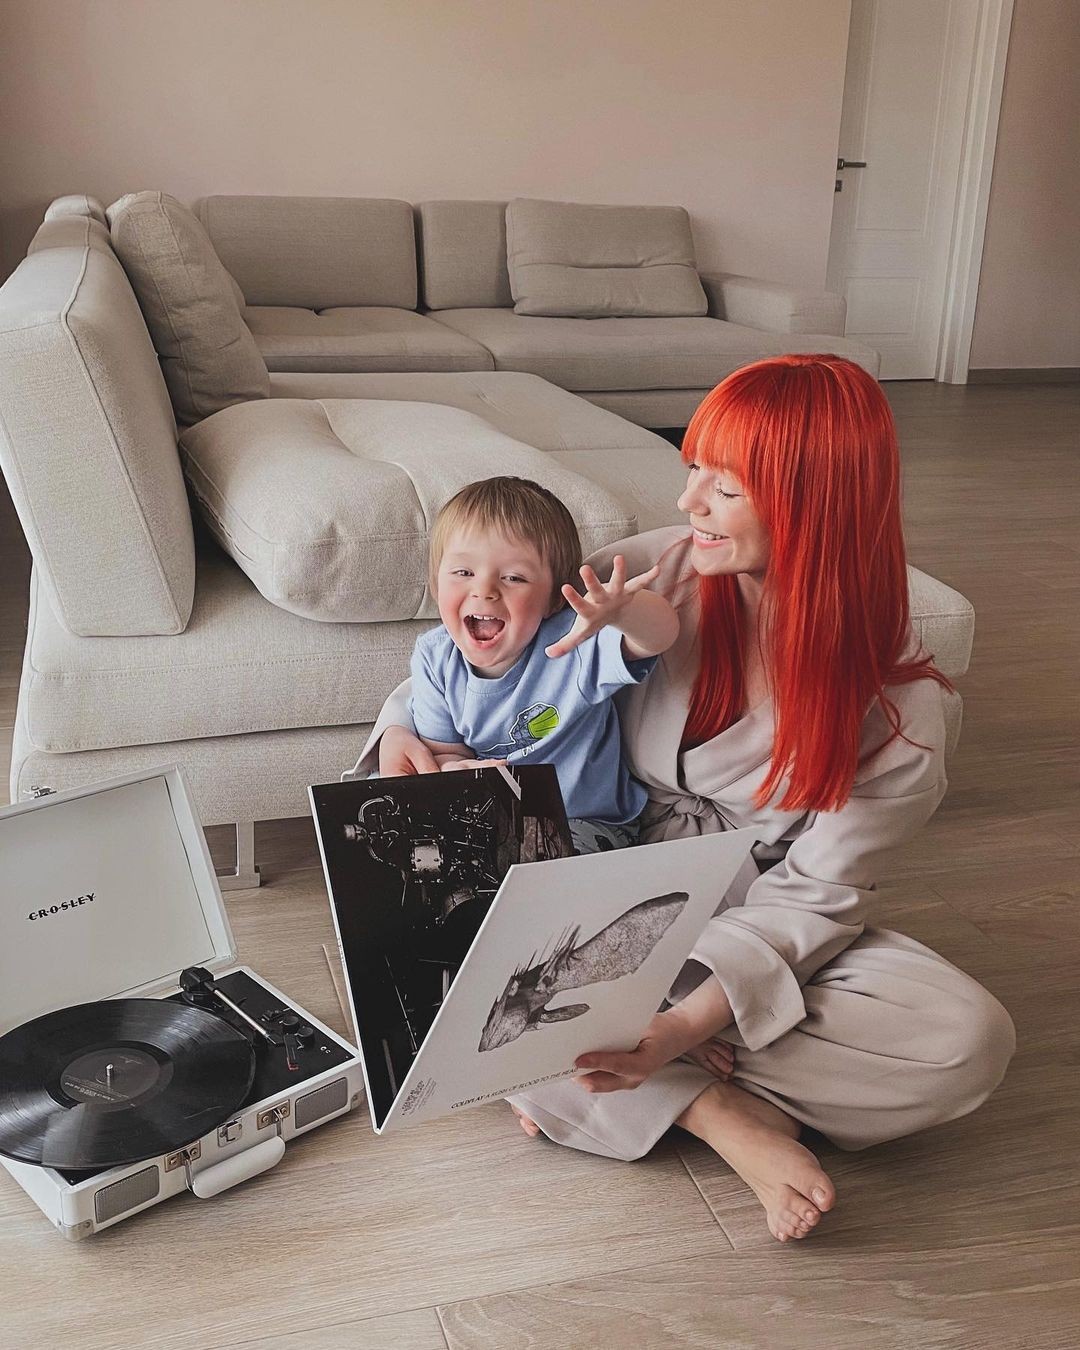 Светлана Тарабарова очаровала сеть новыми фото с сыном